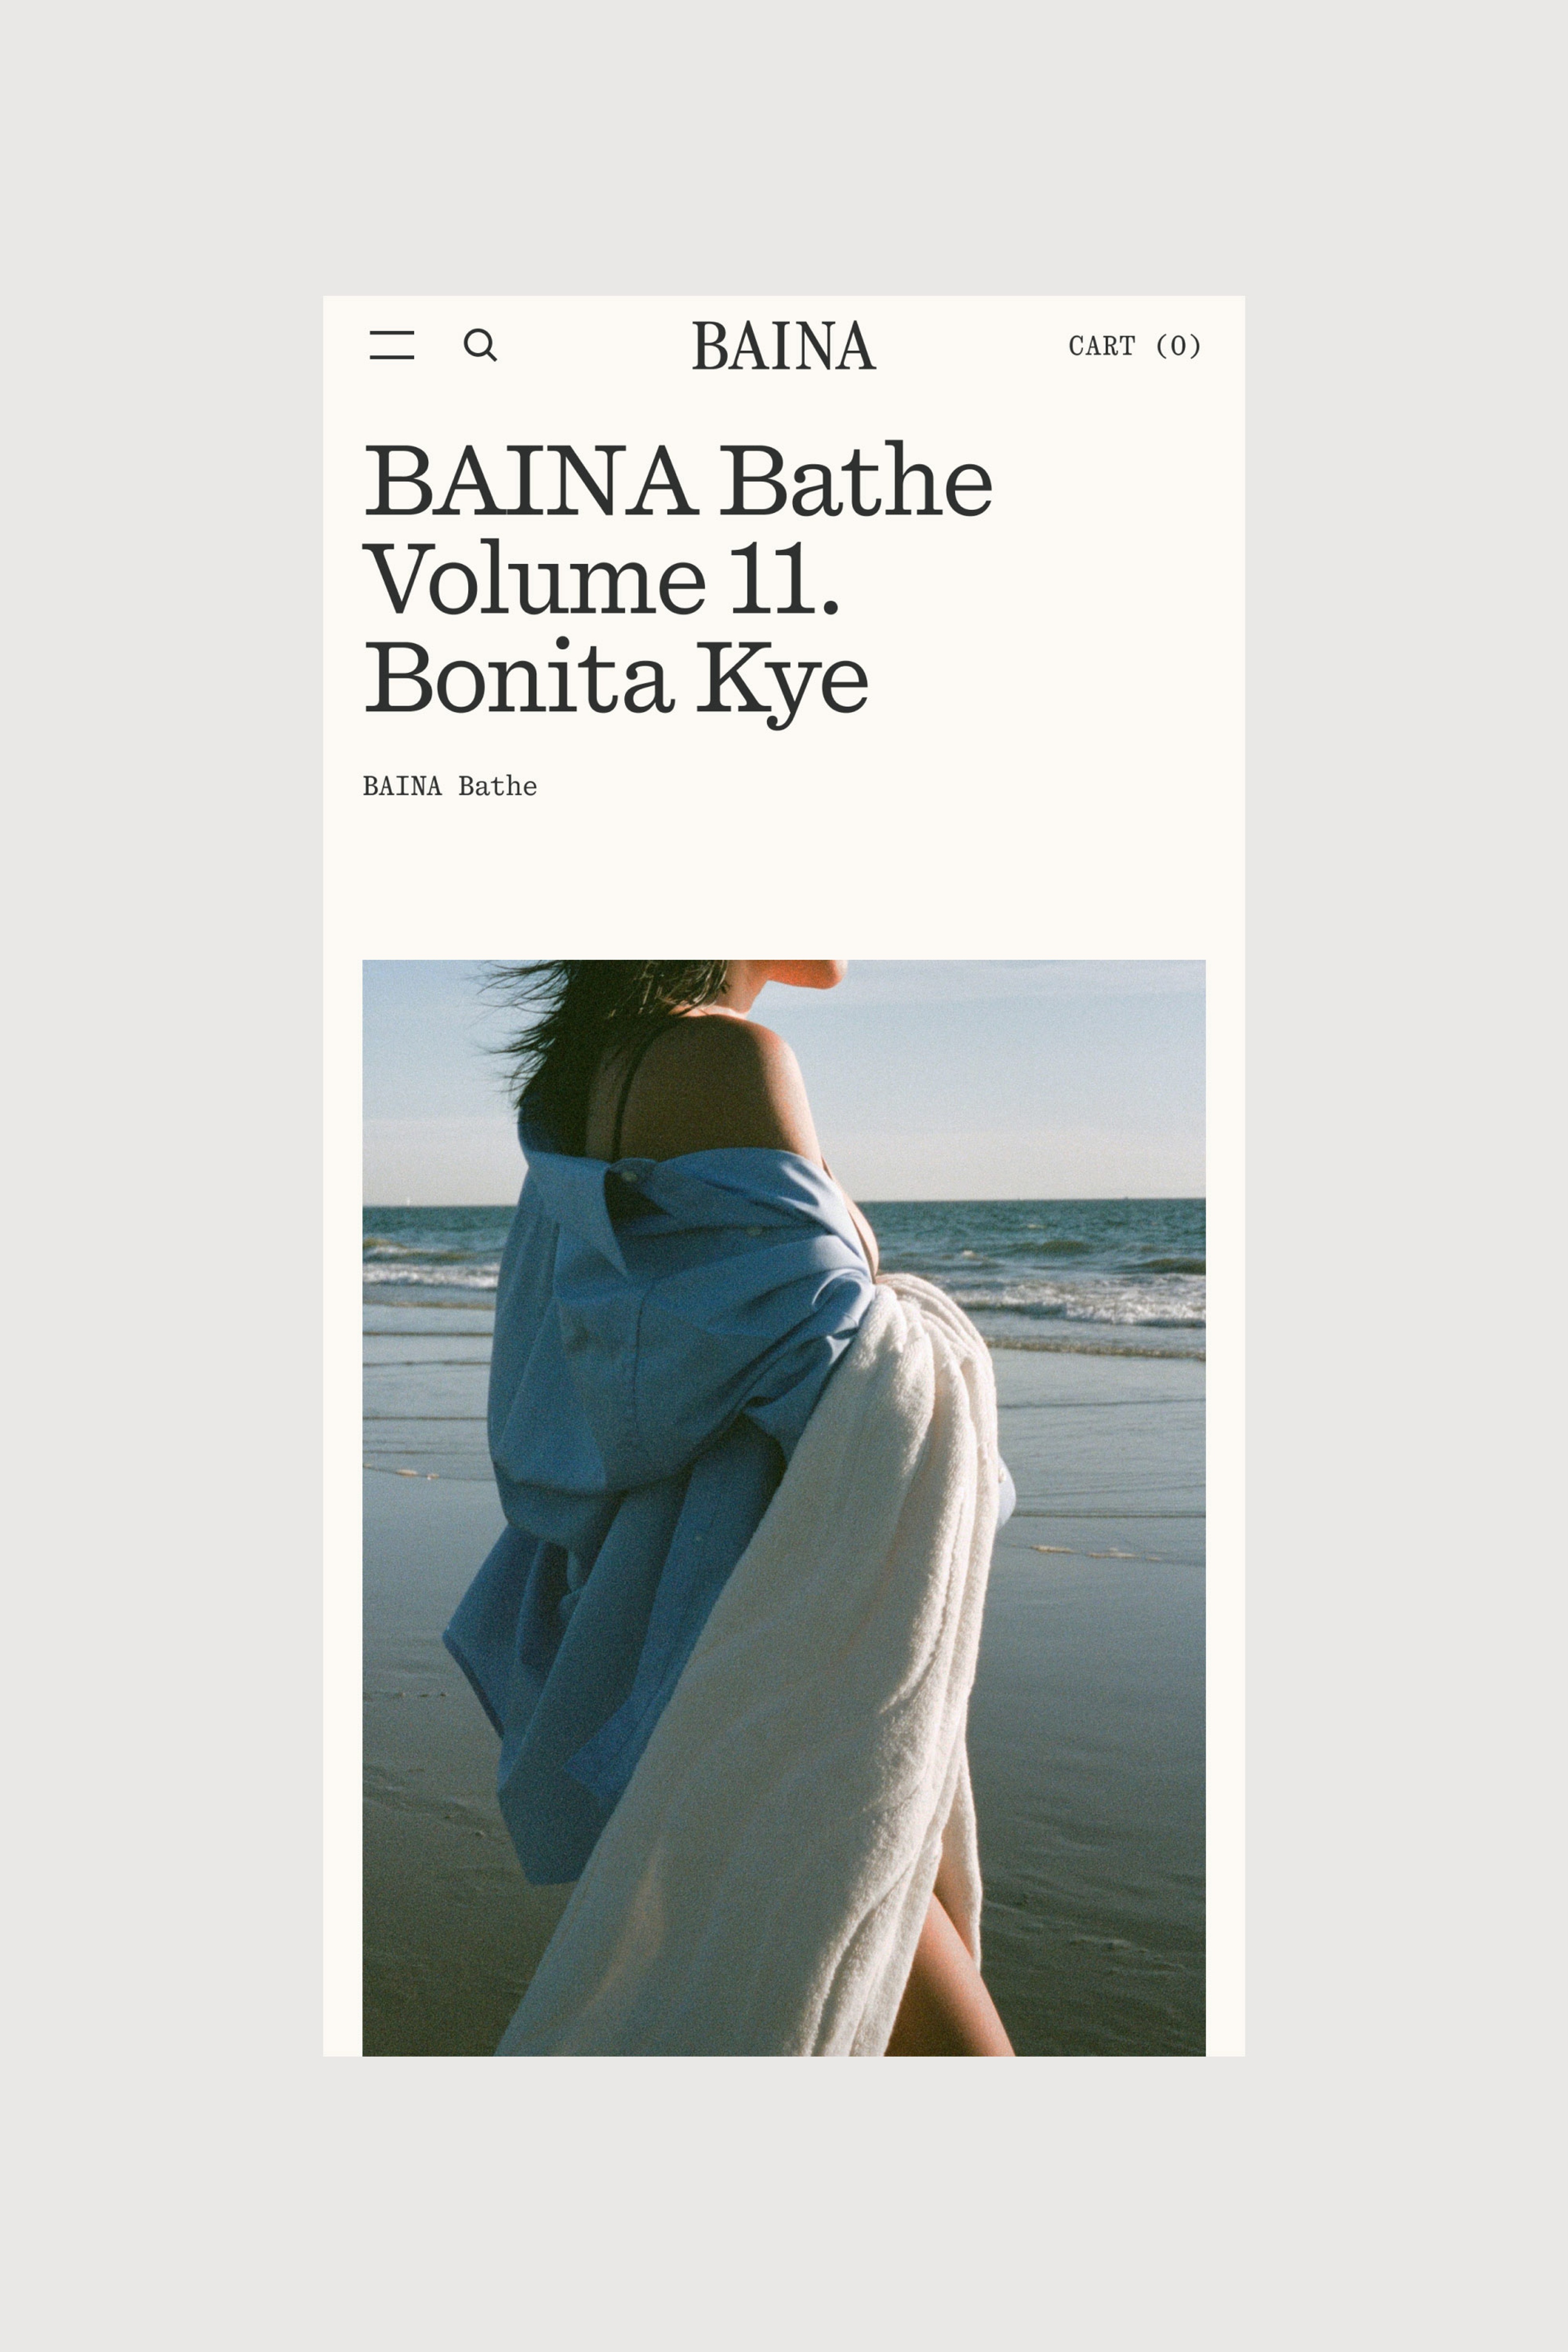 BAINA Bathe